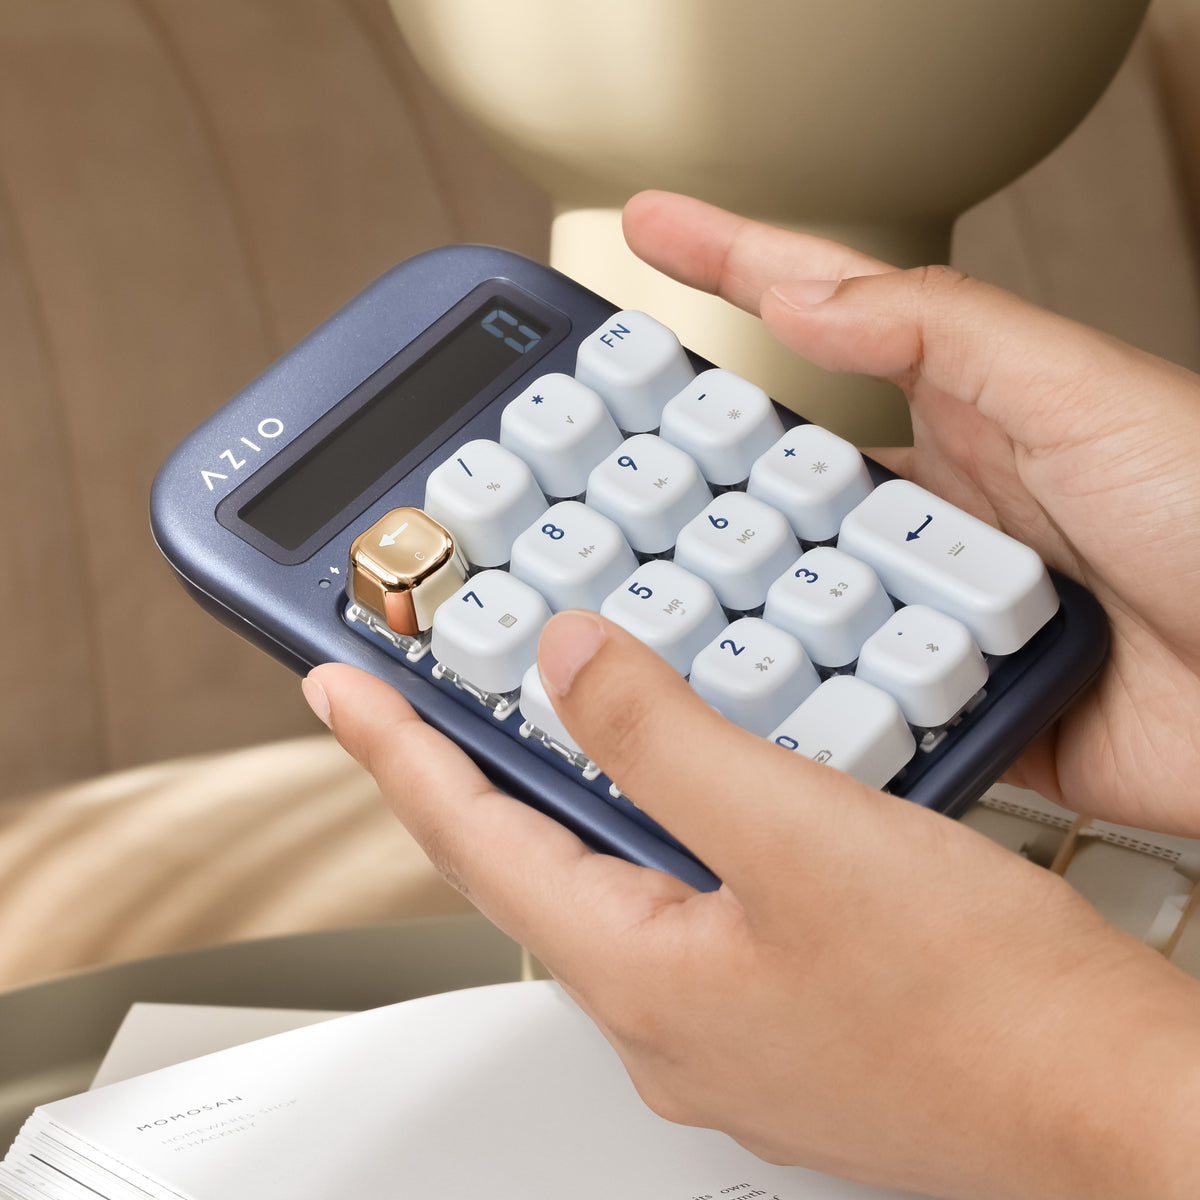 Numpad / calculadora Izo (interruptor azul)